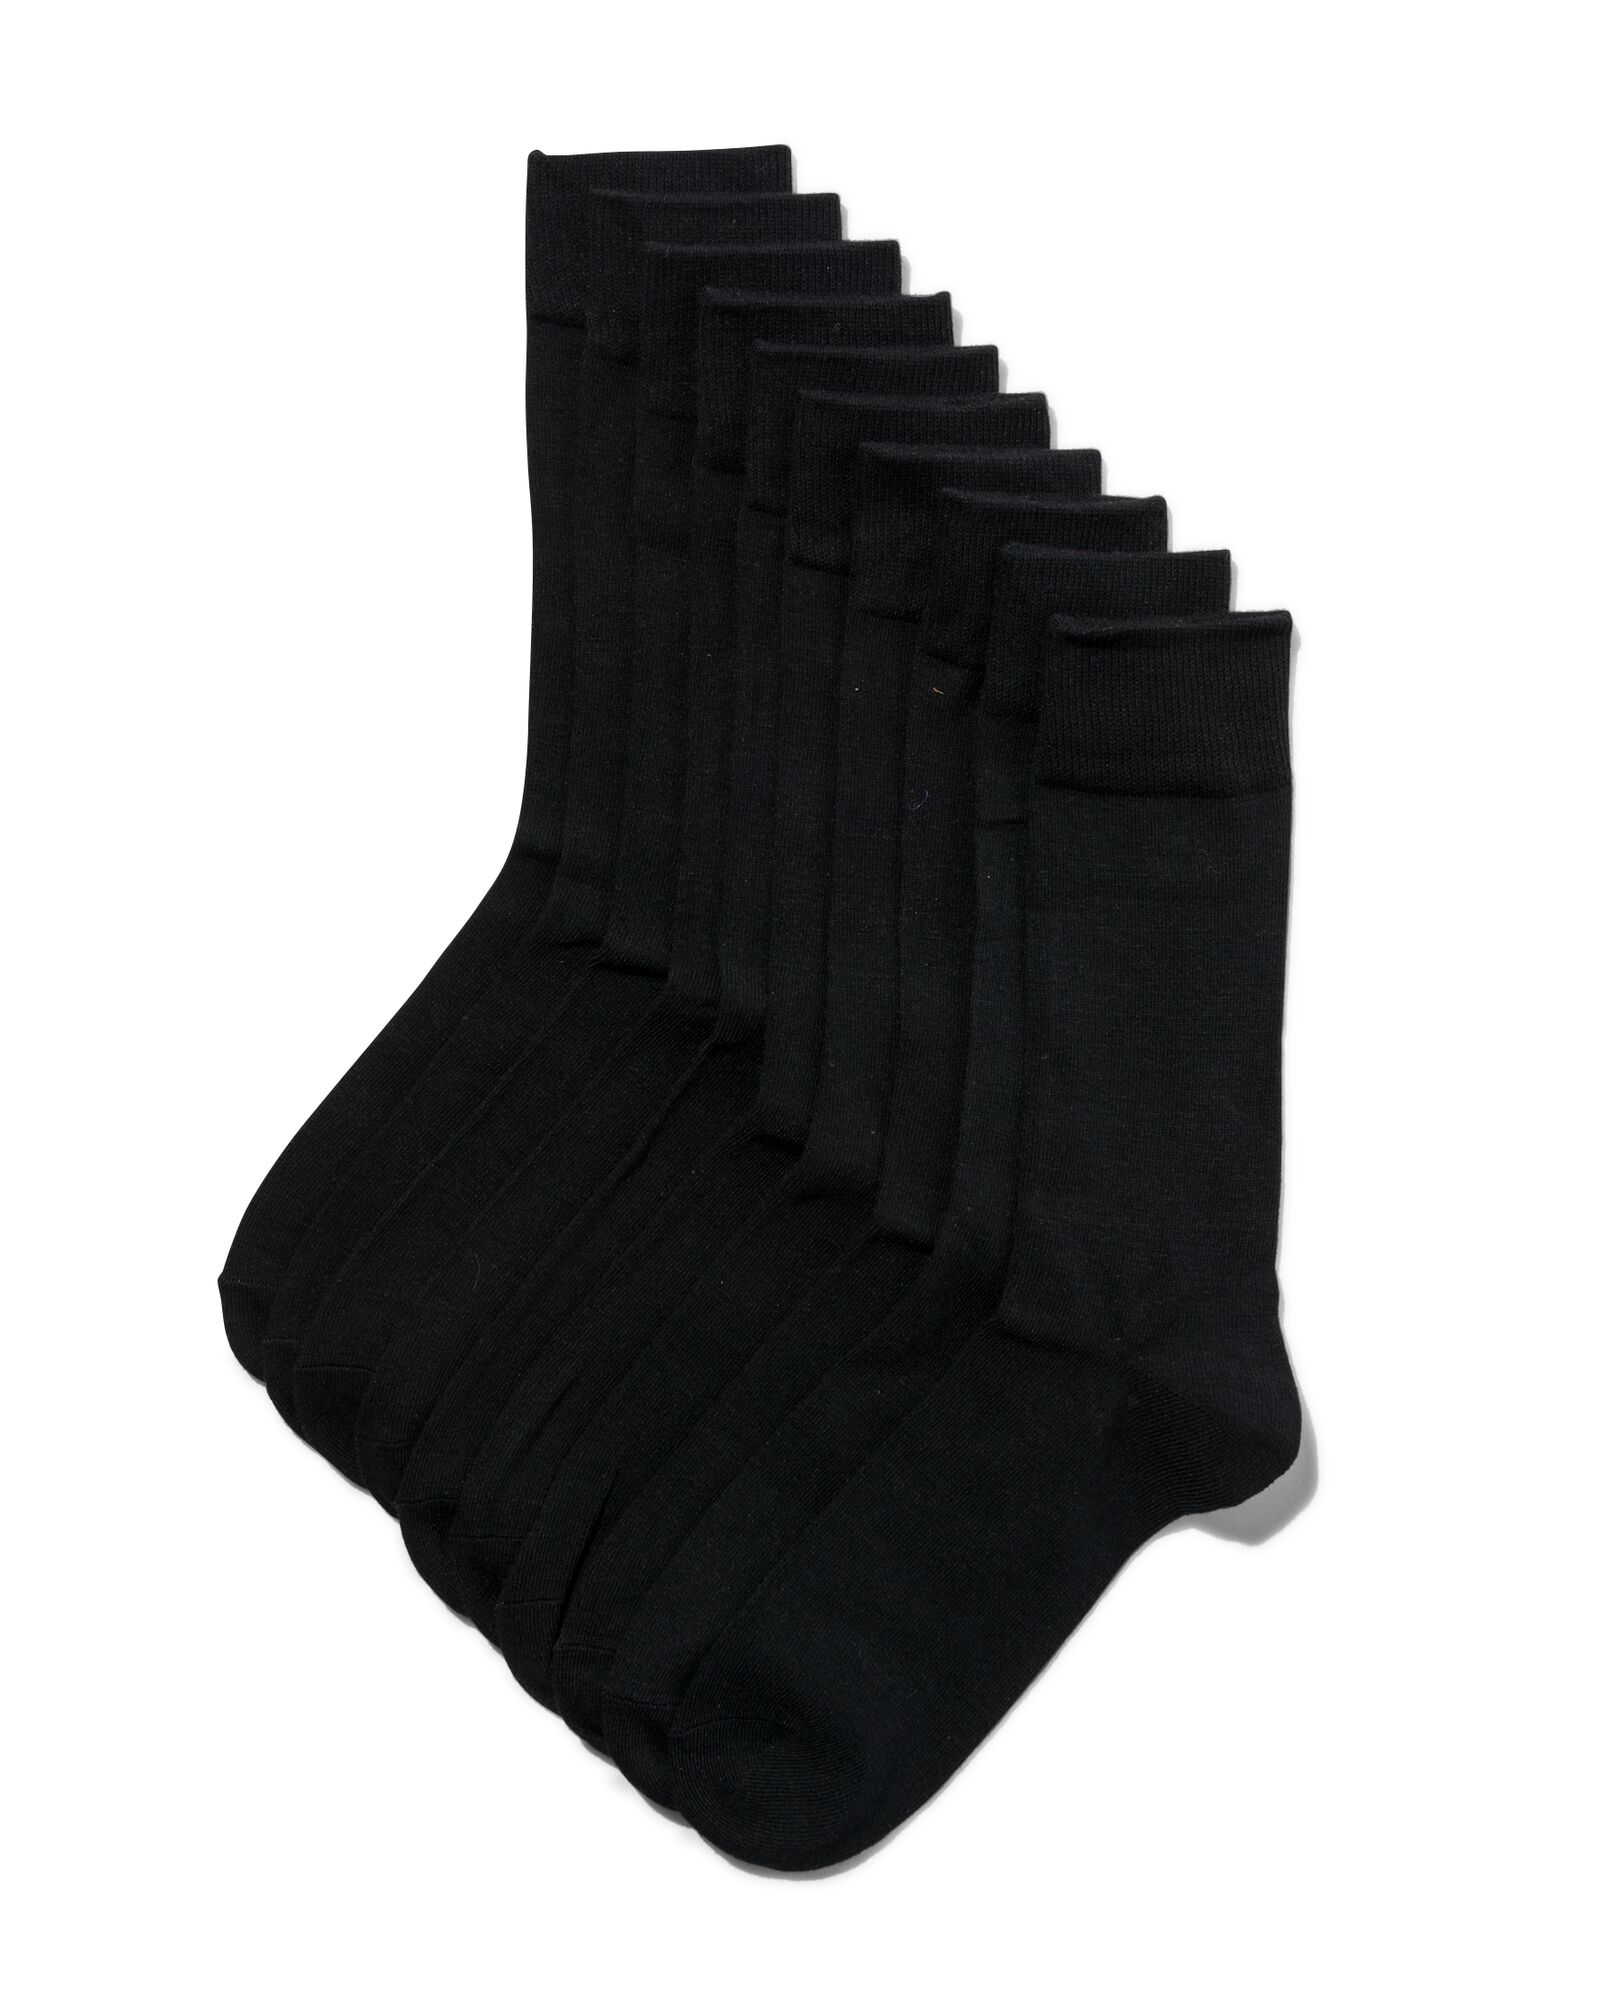 10 paires de chaussettes homme noir - HEMA